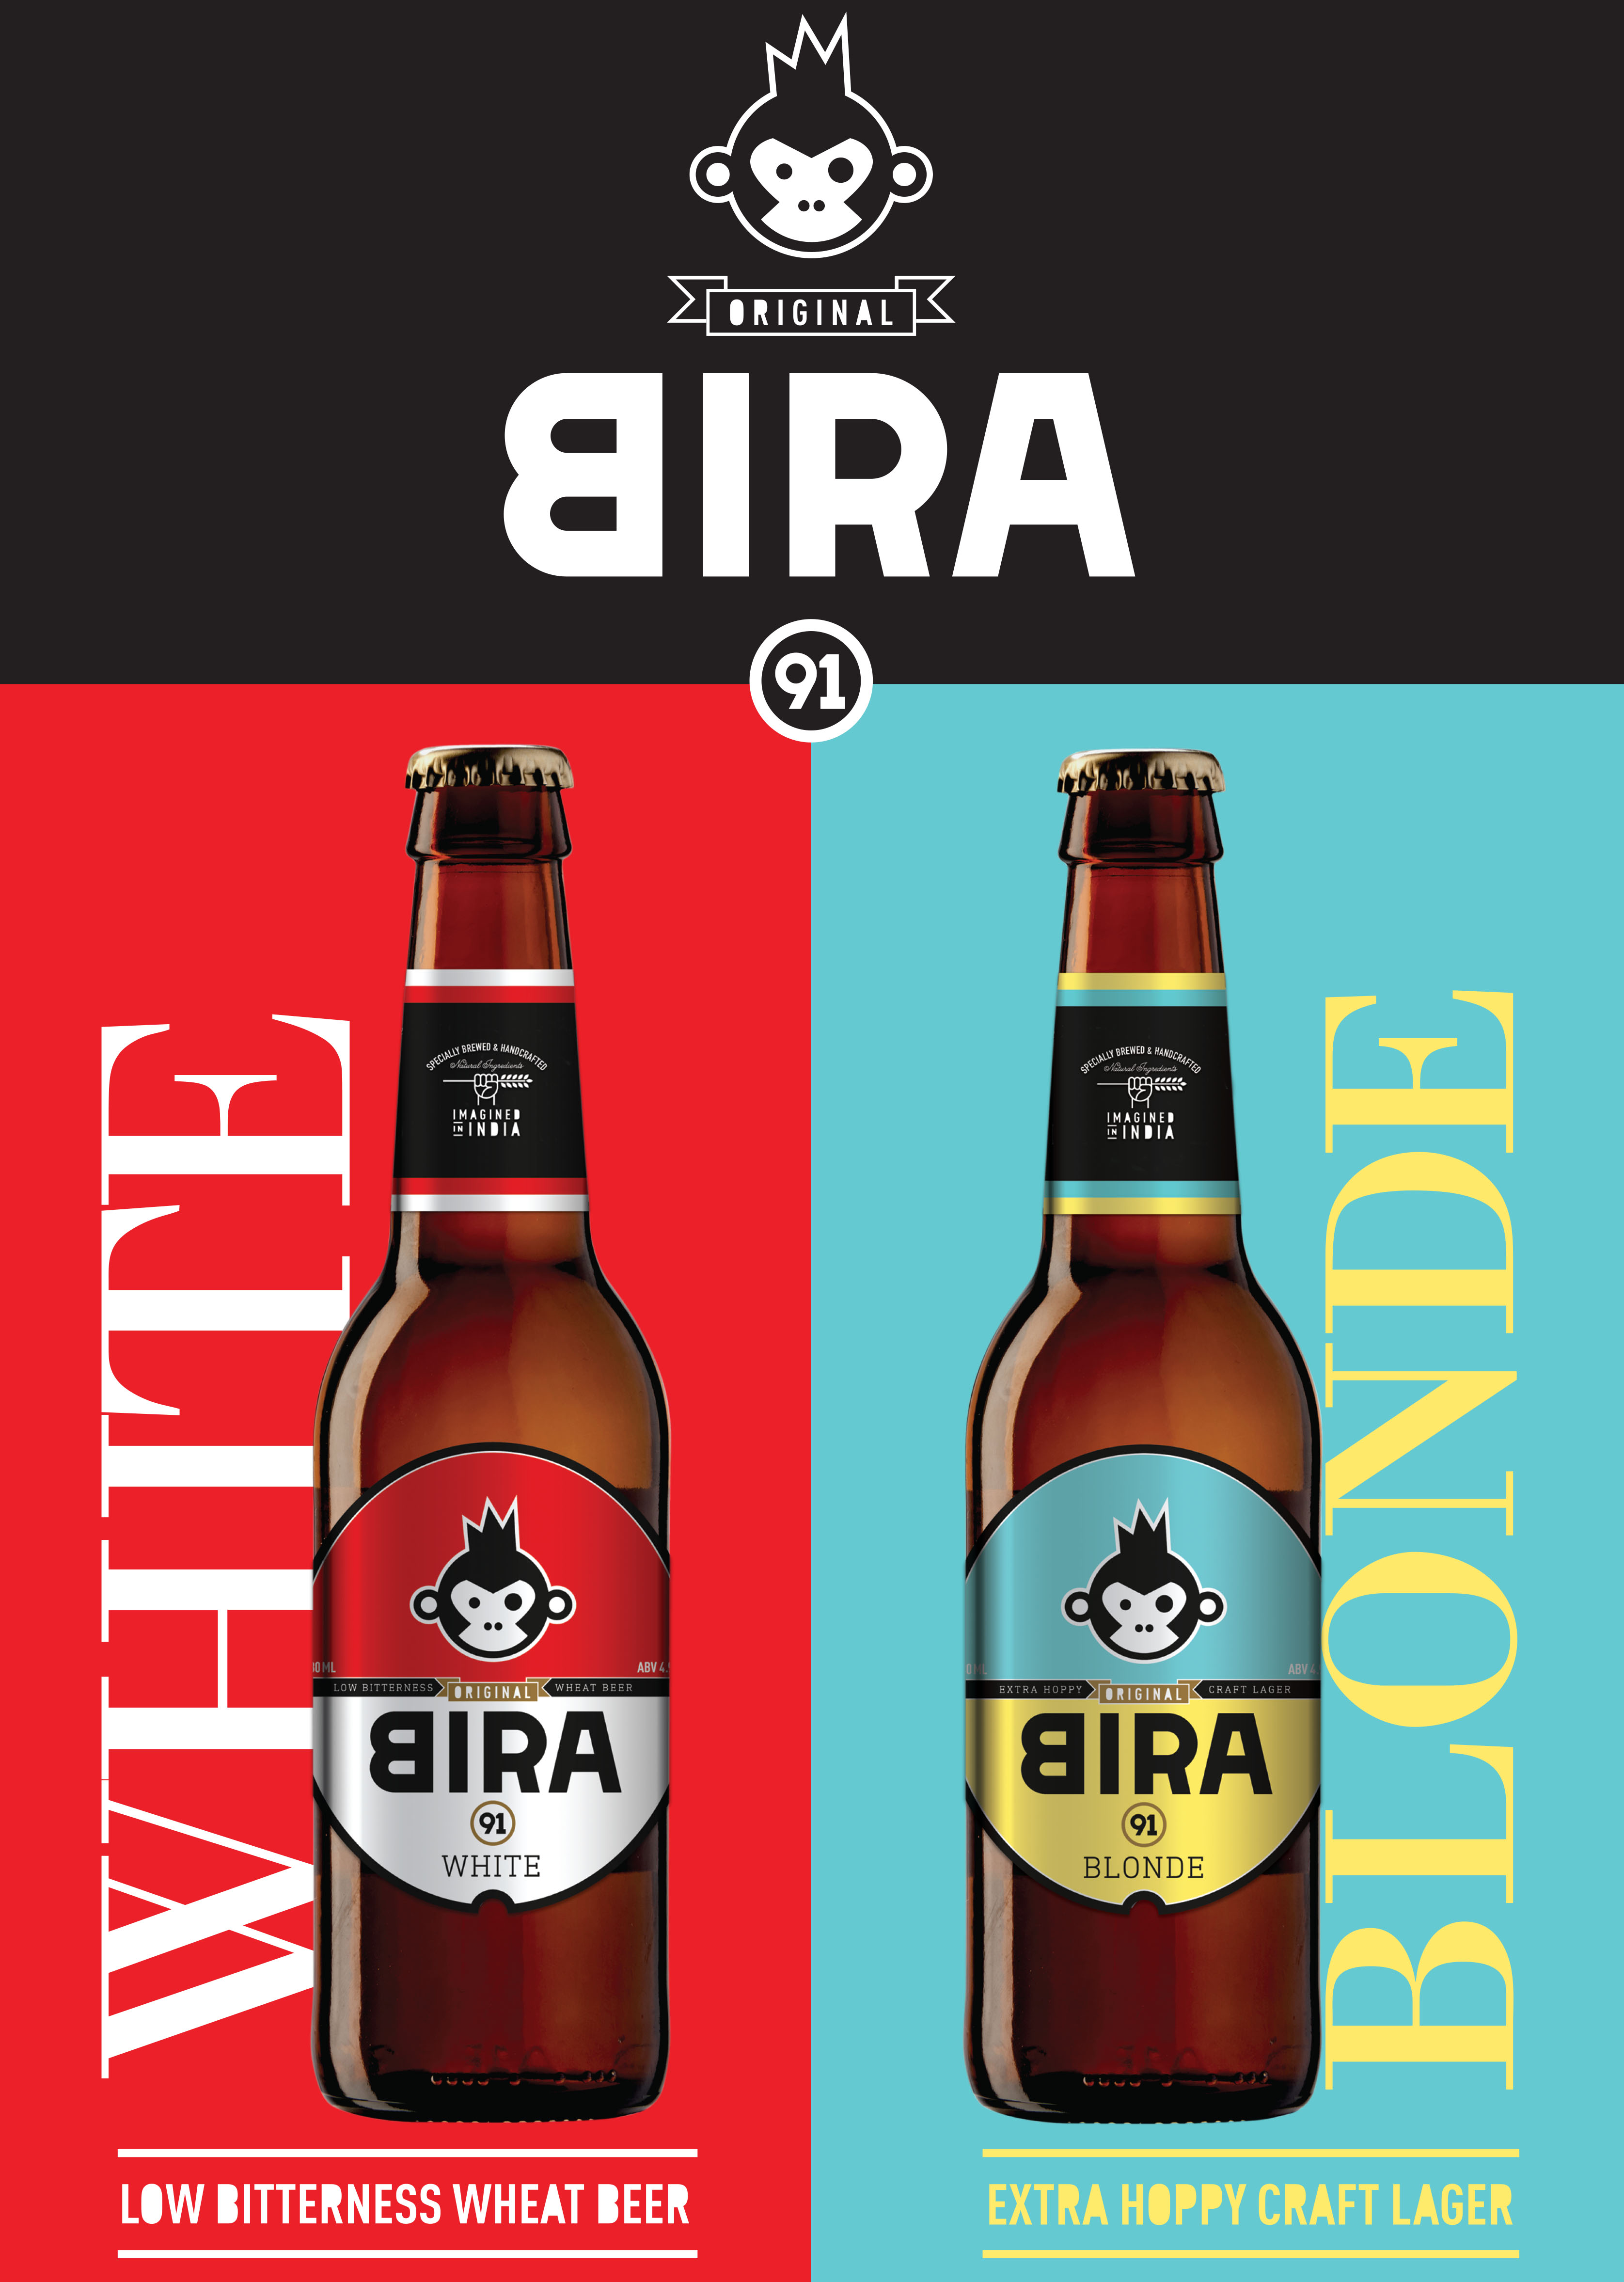 Bira crafts a brand story